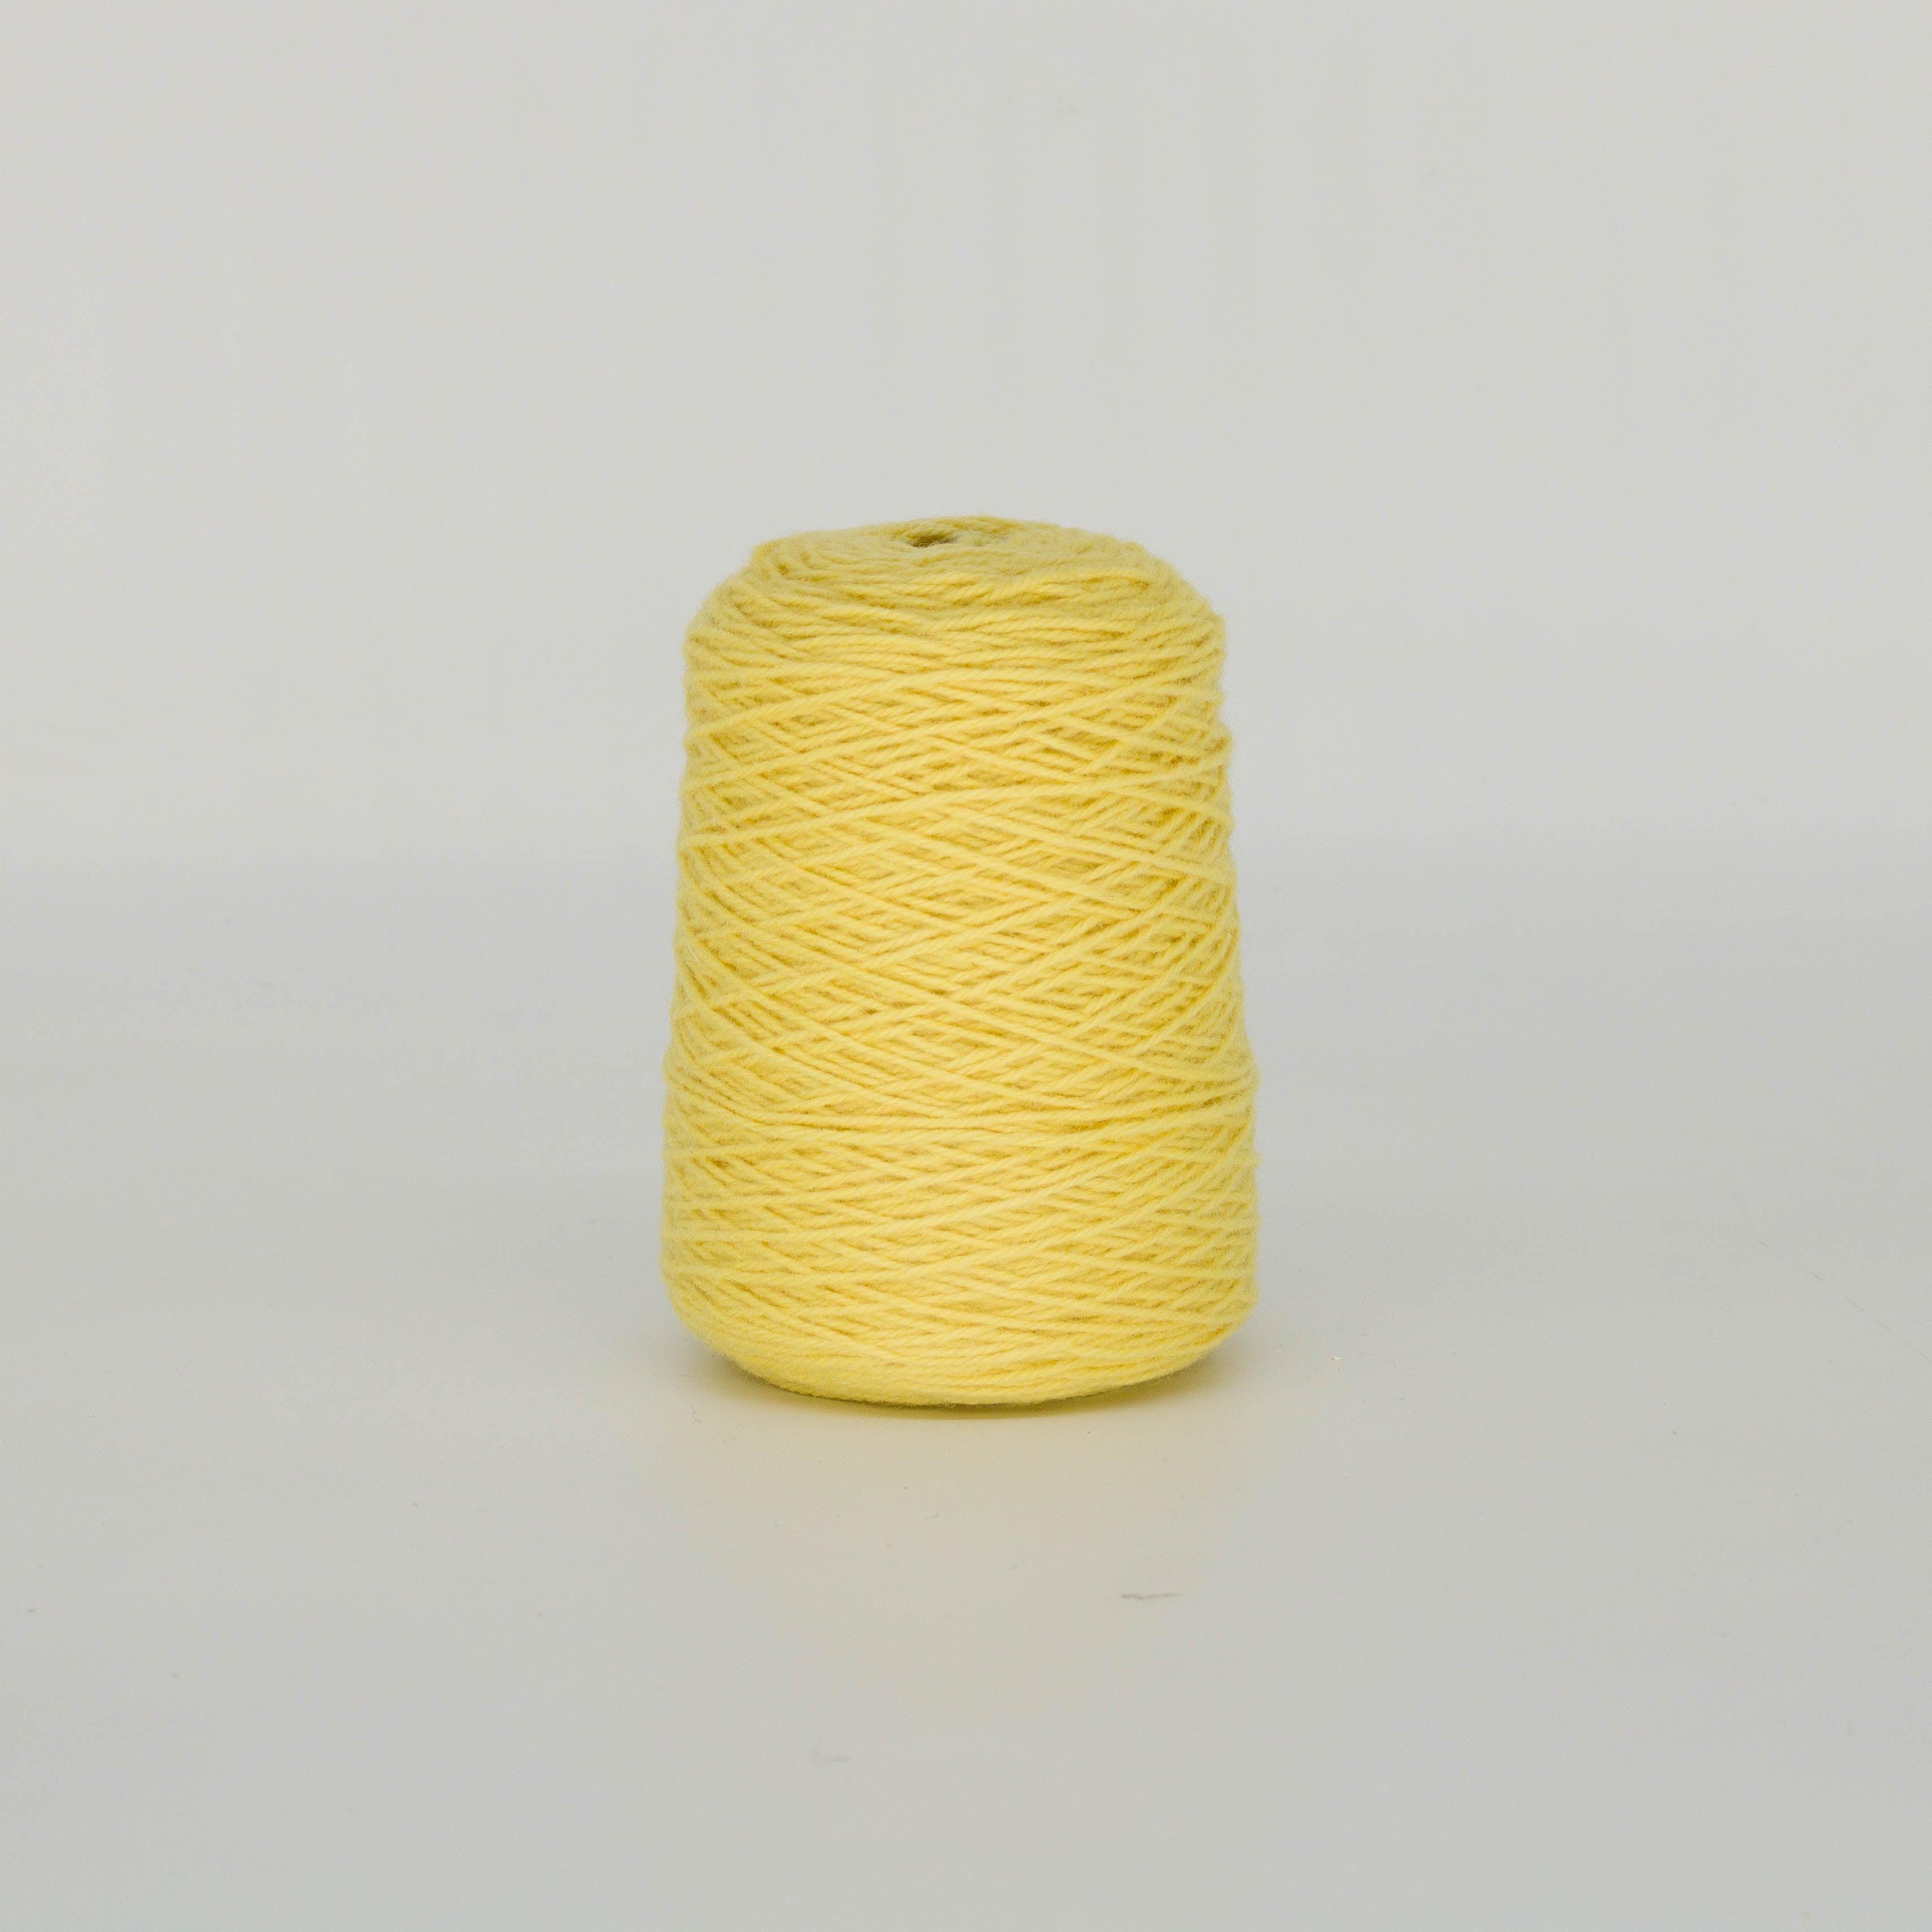 Illuminating yelllow 100% Wool Tufting Yarn On Cone (447) - Tuftingshop